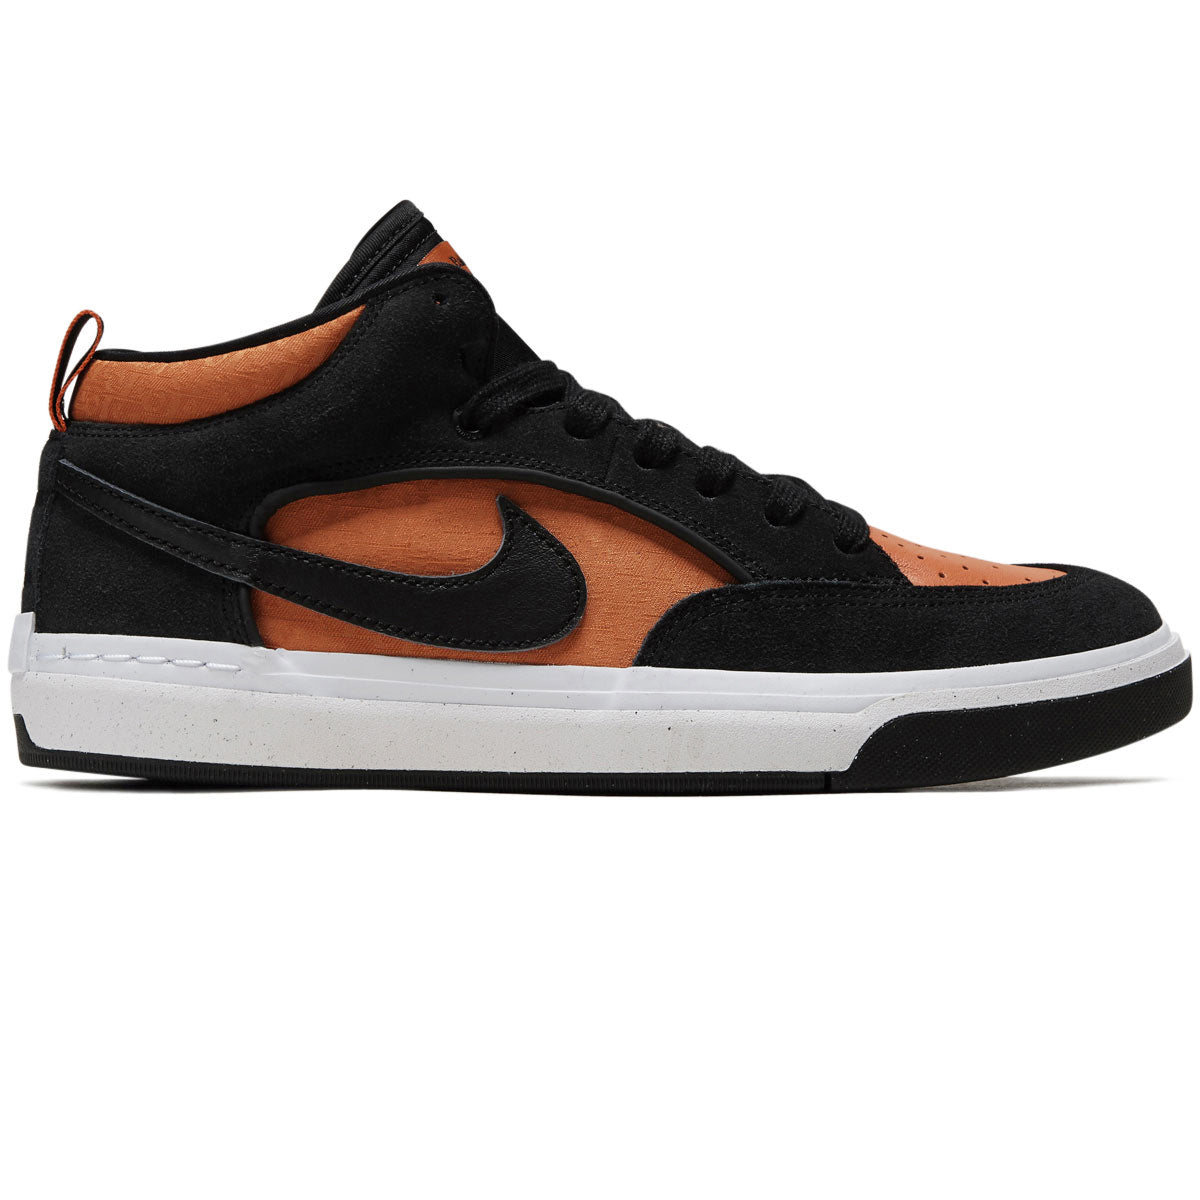 Nike SB React Leo Shoes - Black/Black/Orange/Electro Orange image 1